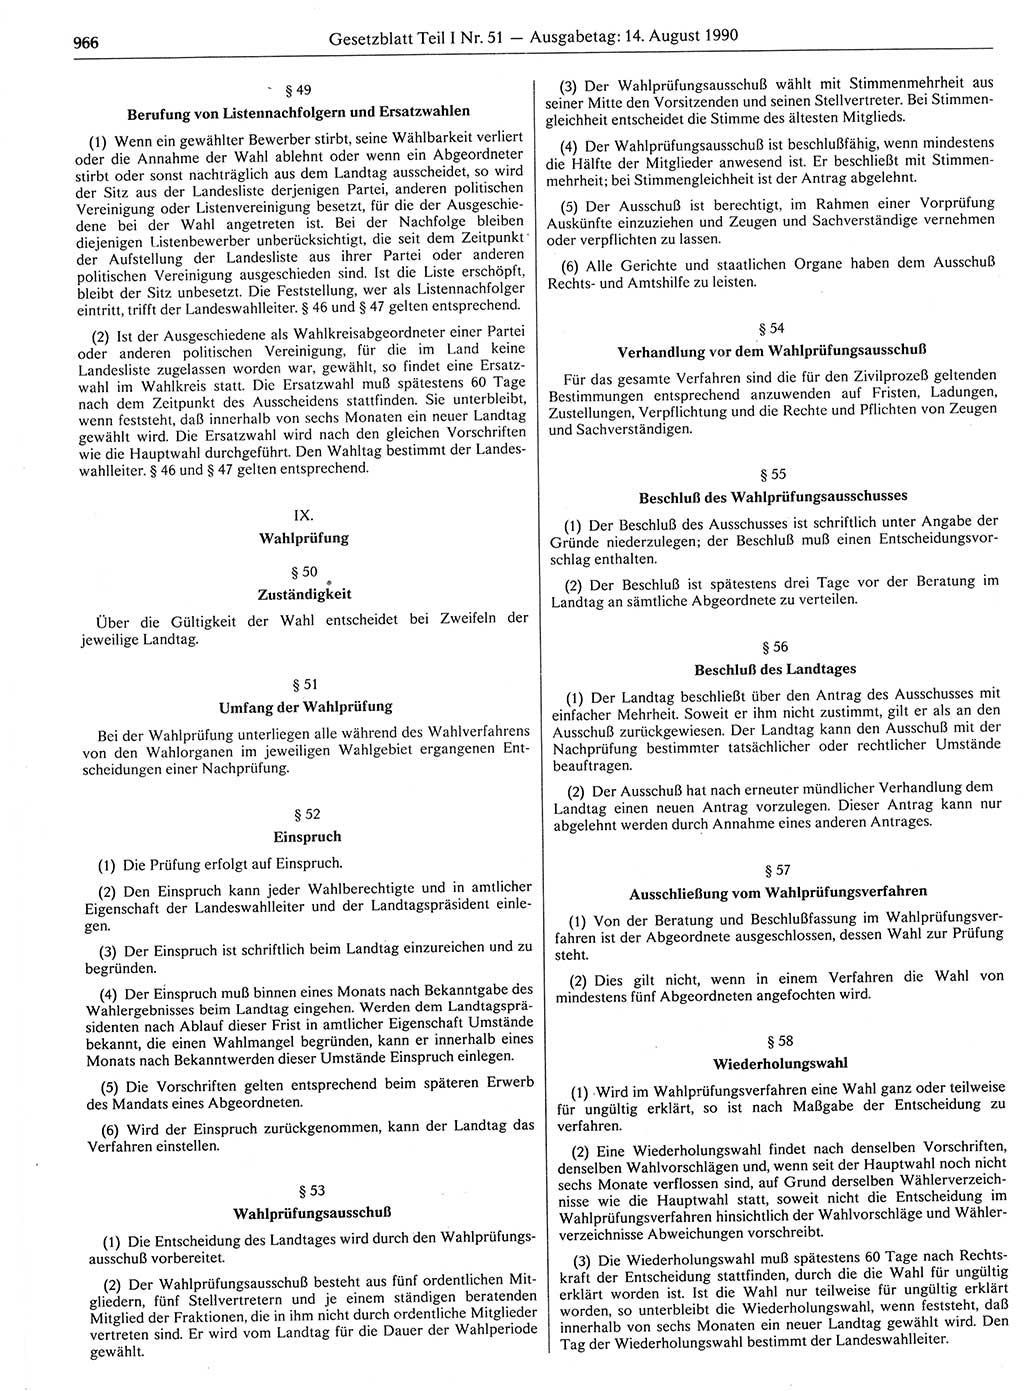 Gesetzblatt (GBl.) der Deutschen Demokratischen Republik (DDR) Teil Ⅰ 1990, Seite 966 (GBl. DDR Ⅰ 1990, S. 966)